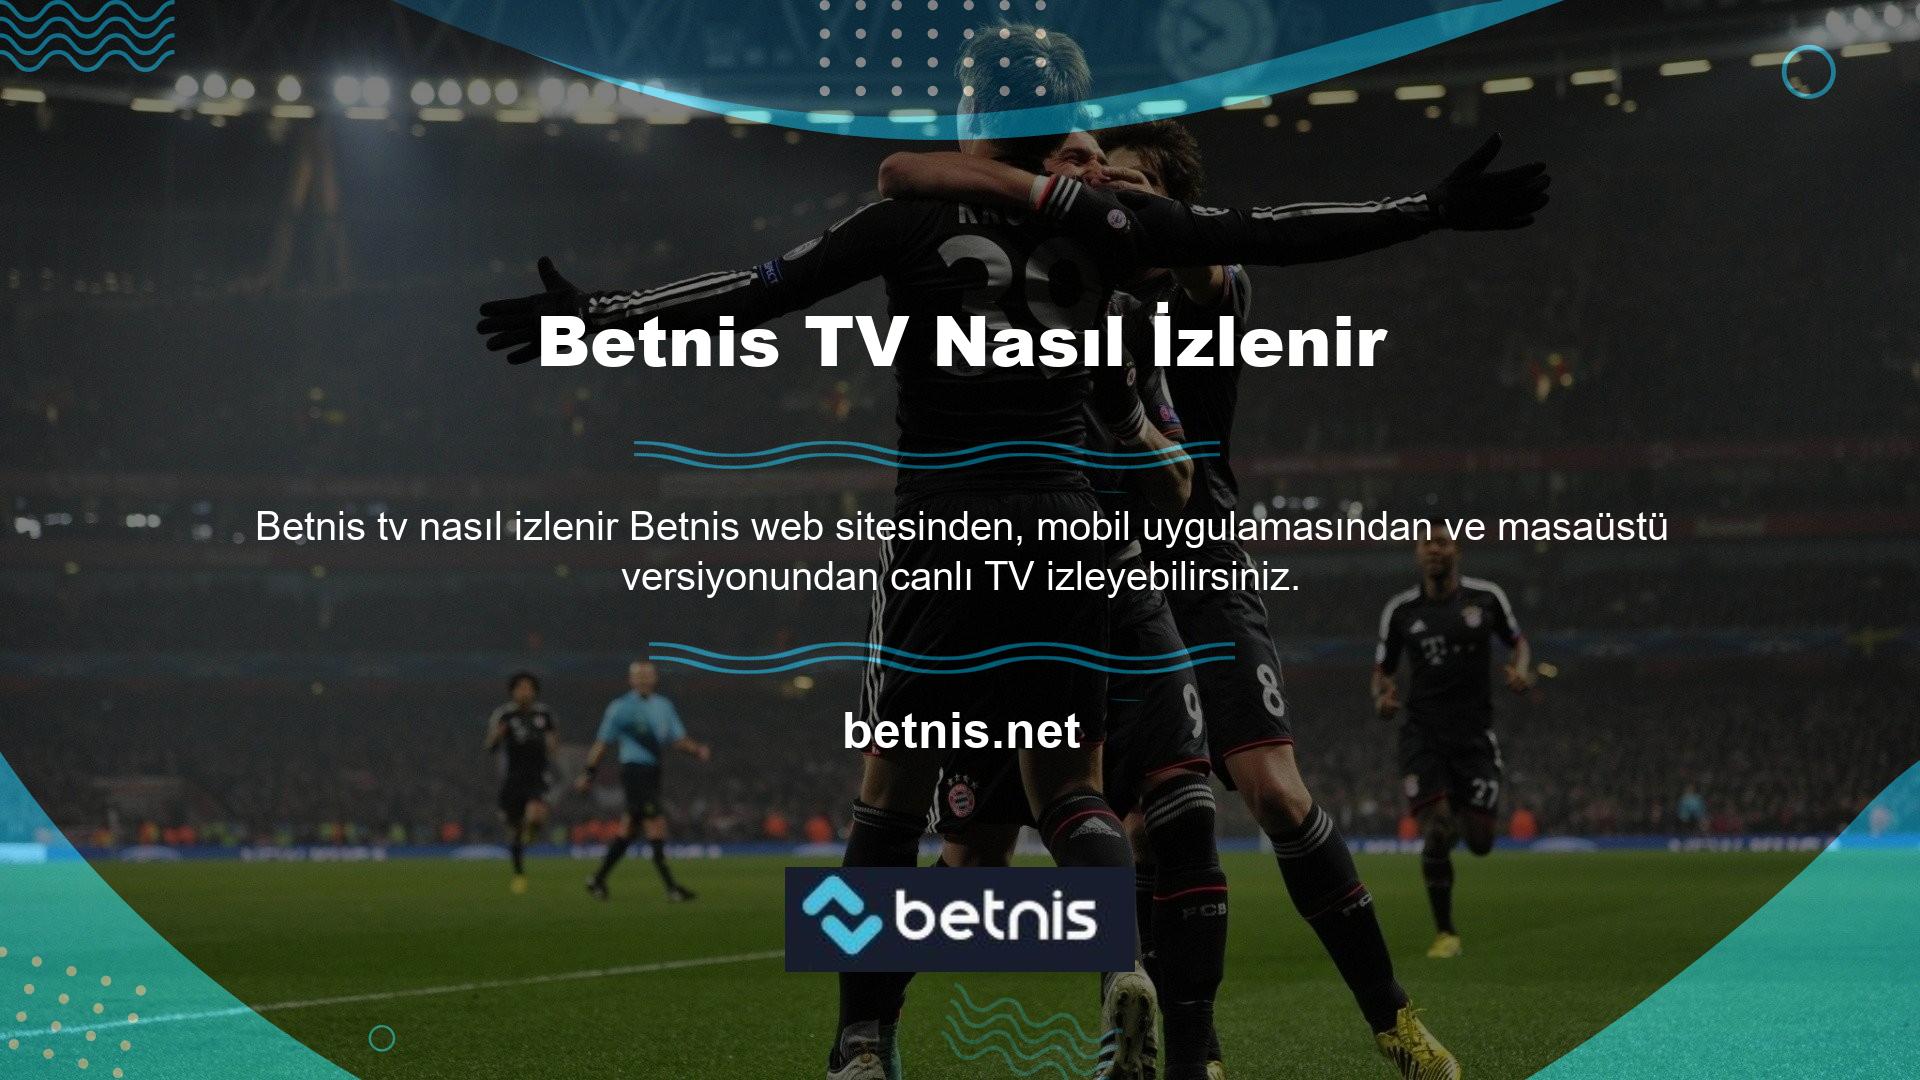 Kullanıcılara Betnis TV'yi Android veya IOS işletim sistemlerinde güvenle izleme imkanı sunulmaktadır